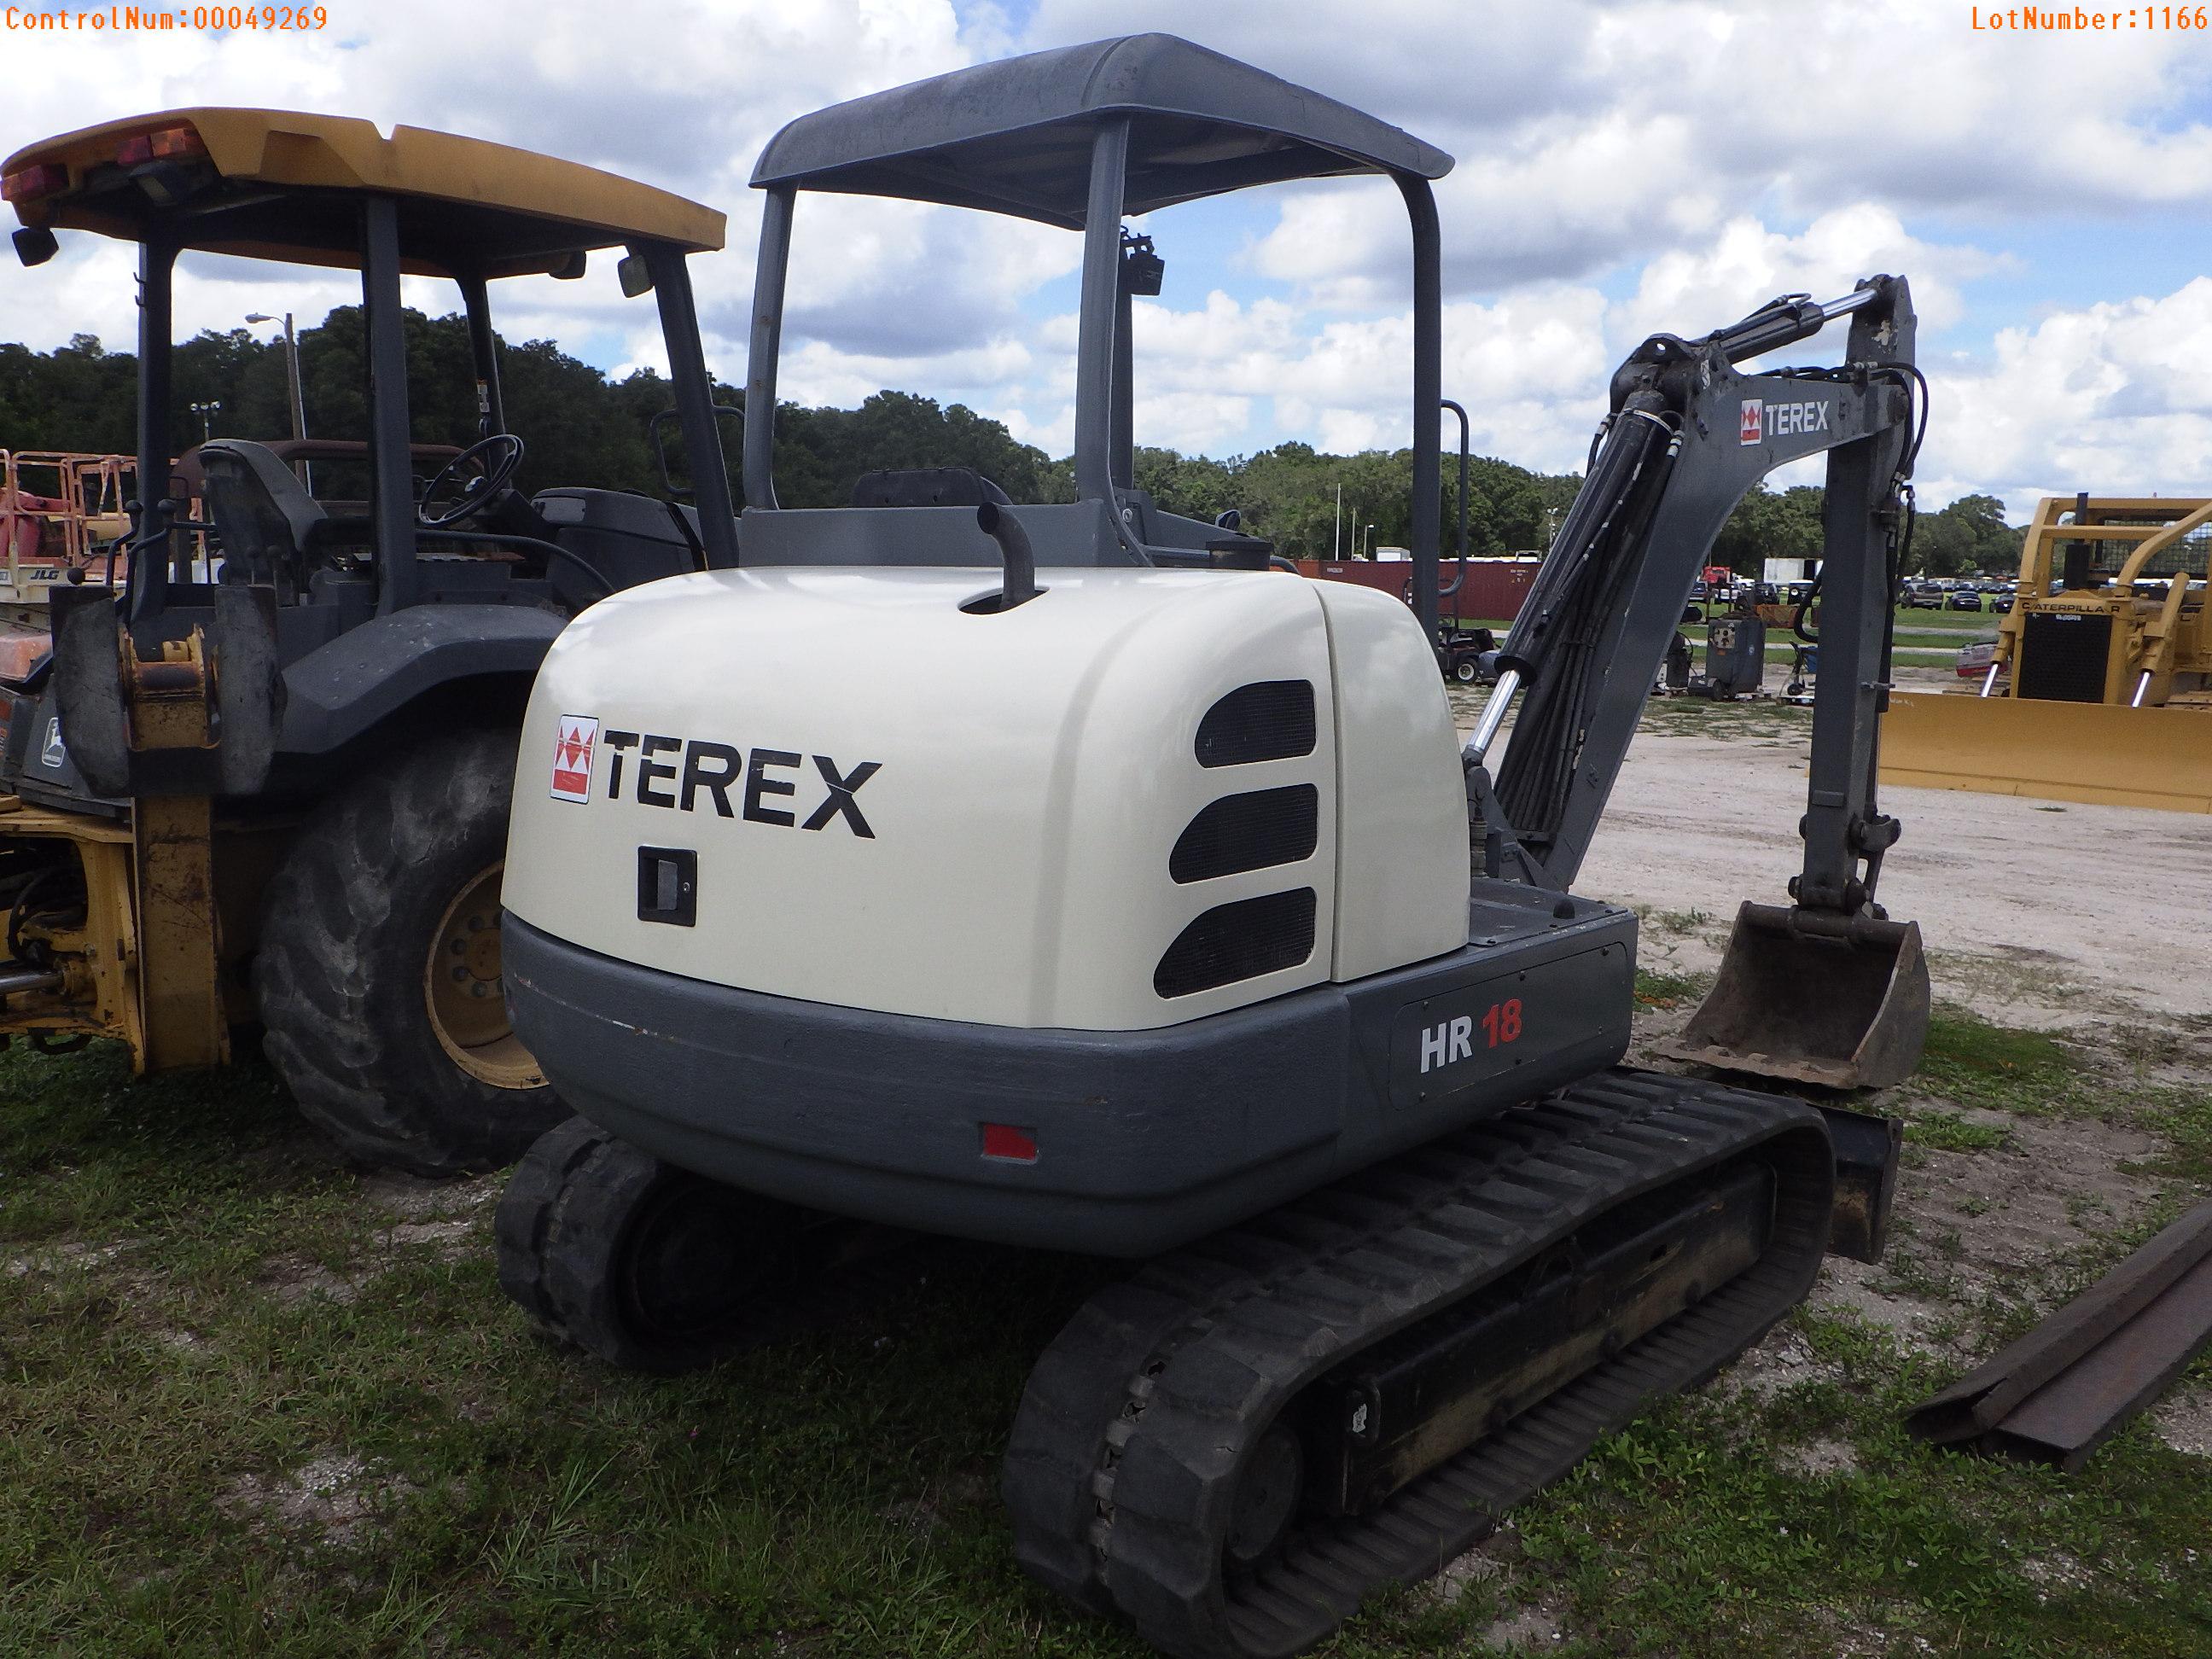 11-01156 (Equip.-Excavator)  Seller:Private/Dealer TEREX HR18 OROPS RUBBER TRACK